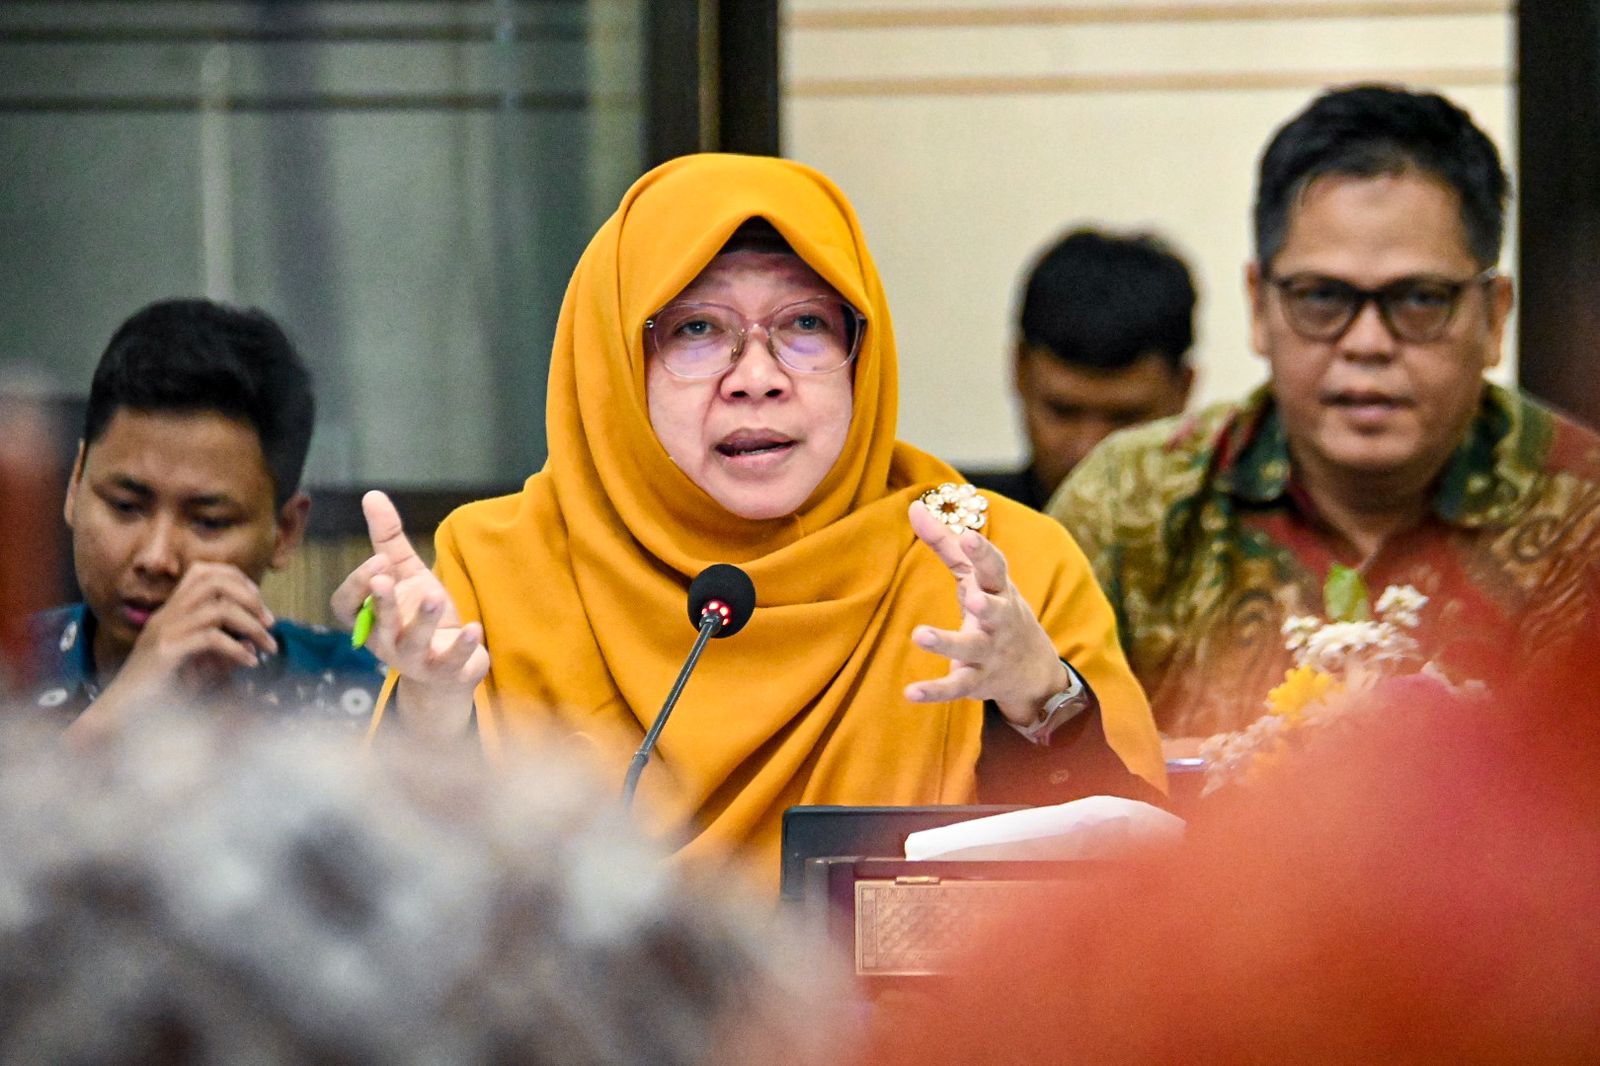 Rasio Pajak Indonesia Terendah Dari Negara-negara Berkembang, Anis Byarwati: Konsekwensinya Utang Semakin Melonjak Naik